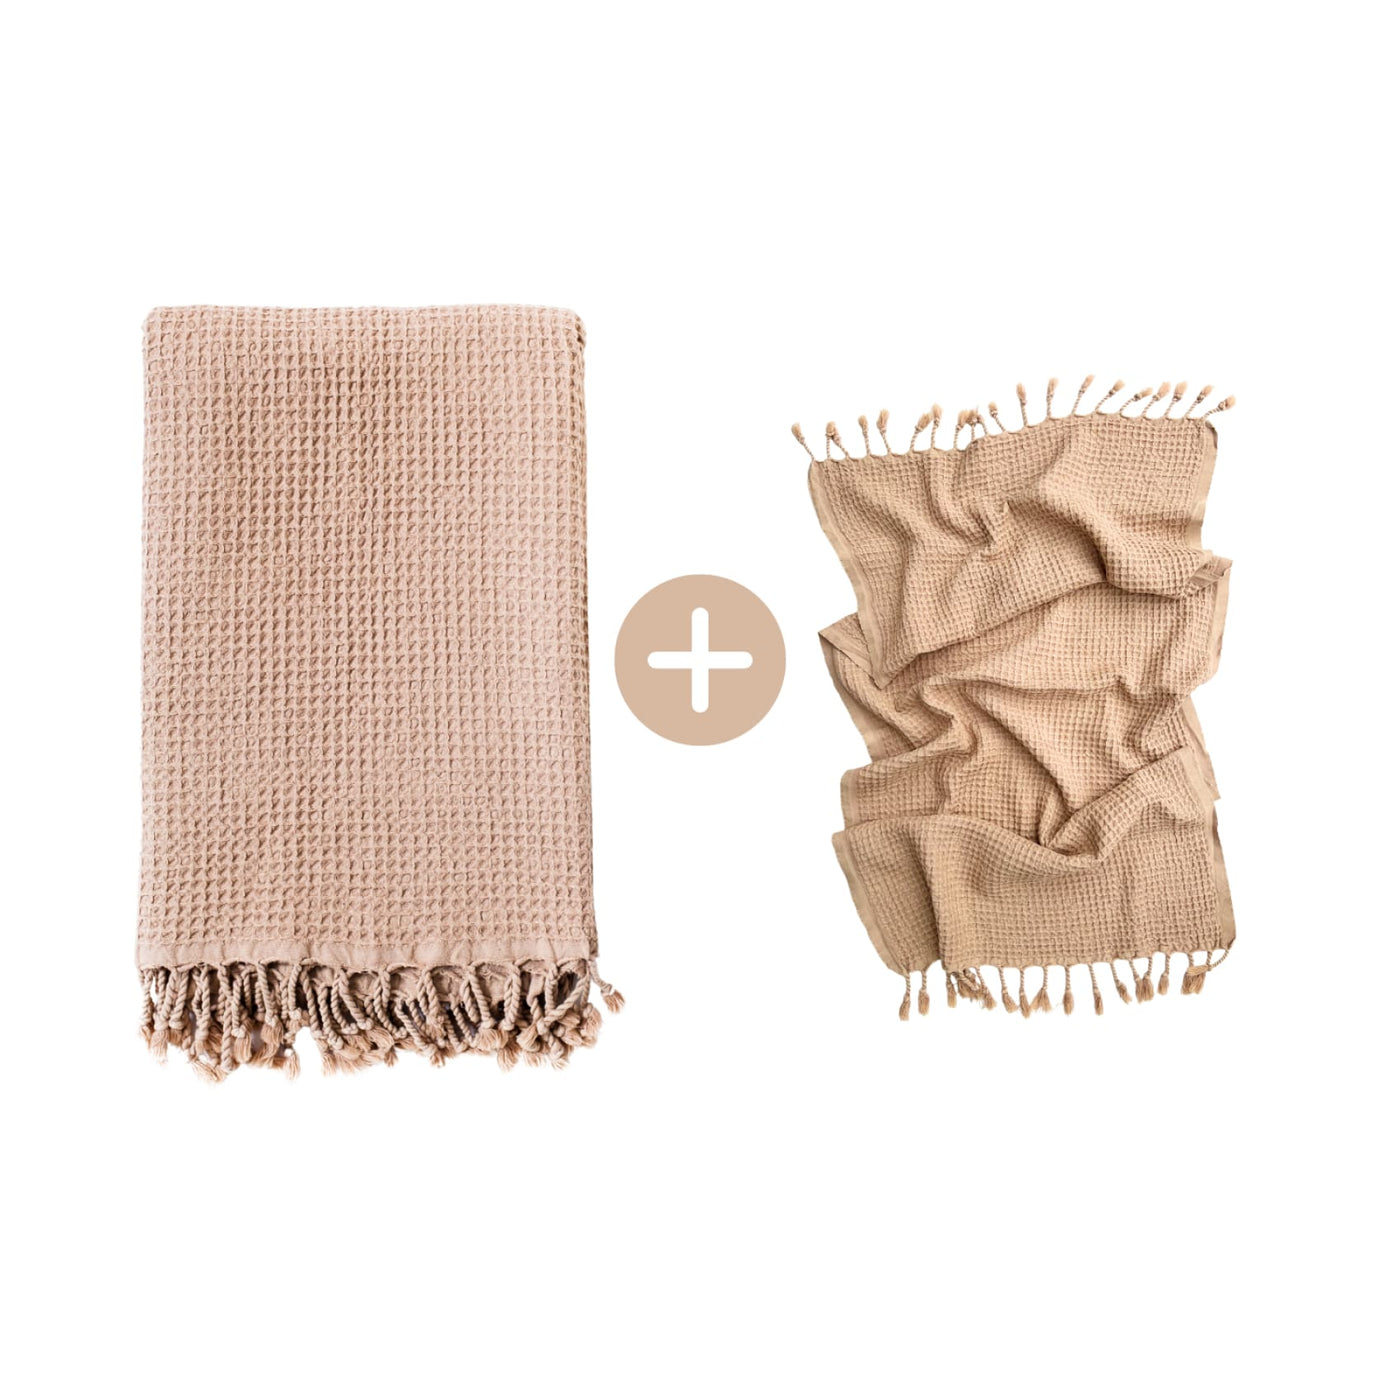 Rulo Bath Set - Cotton Peshtemal & Hand/Hair Towel - Save £10 - Blush